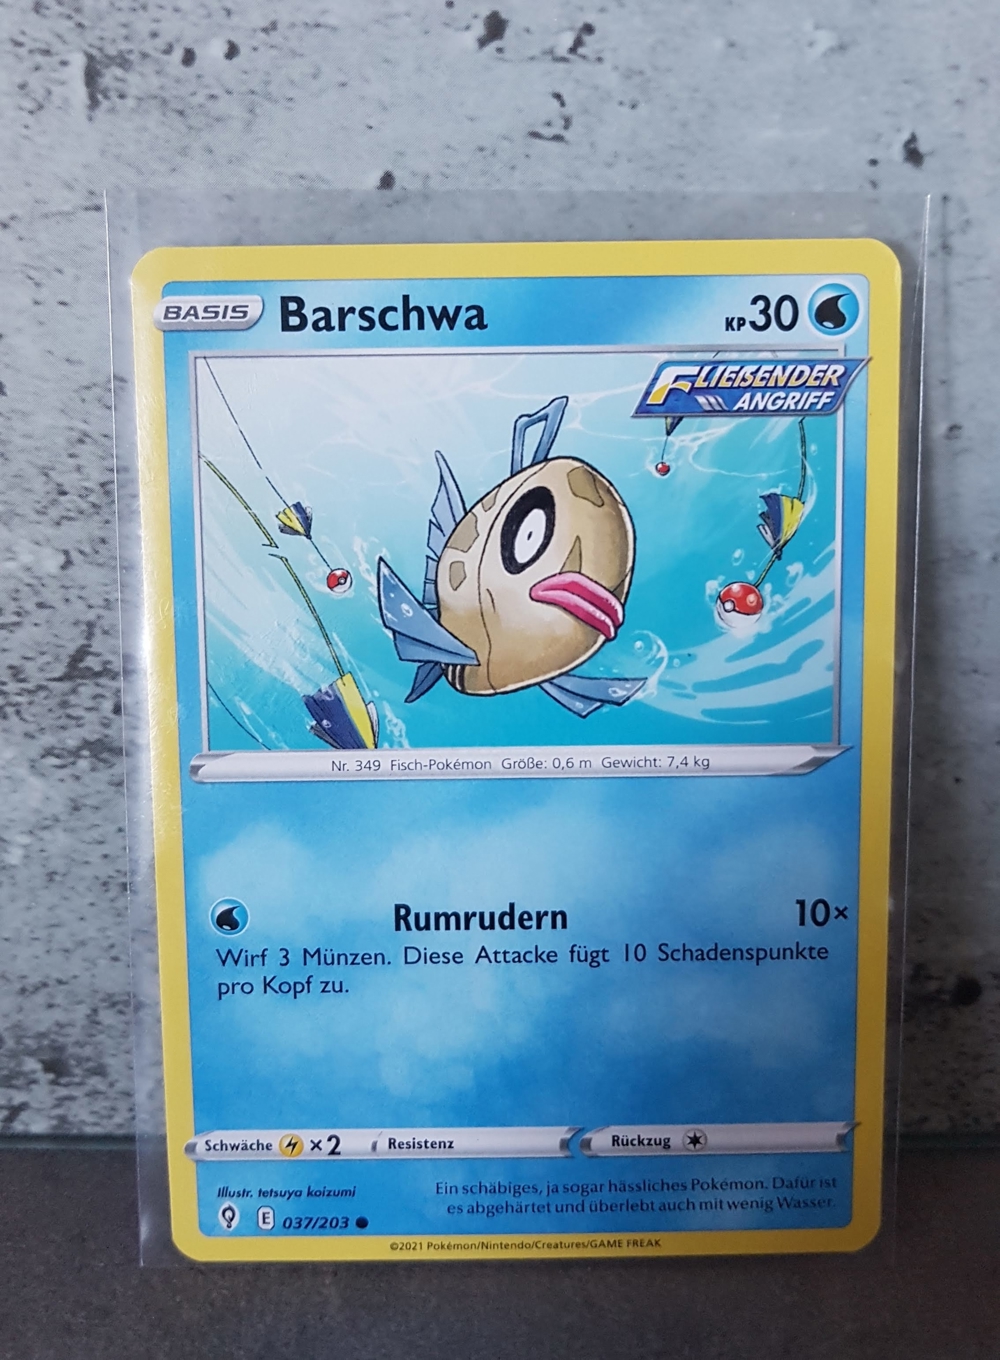 # Pokemon Karte Barschwa ©2021 Nintendo 037/203 Basis Card Deutsch